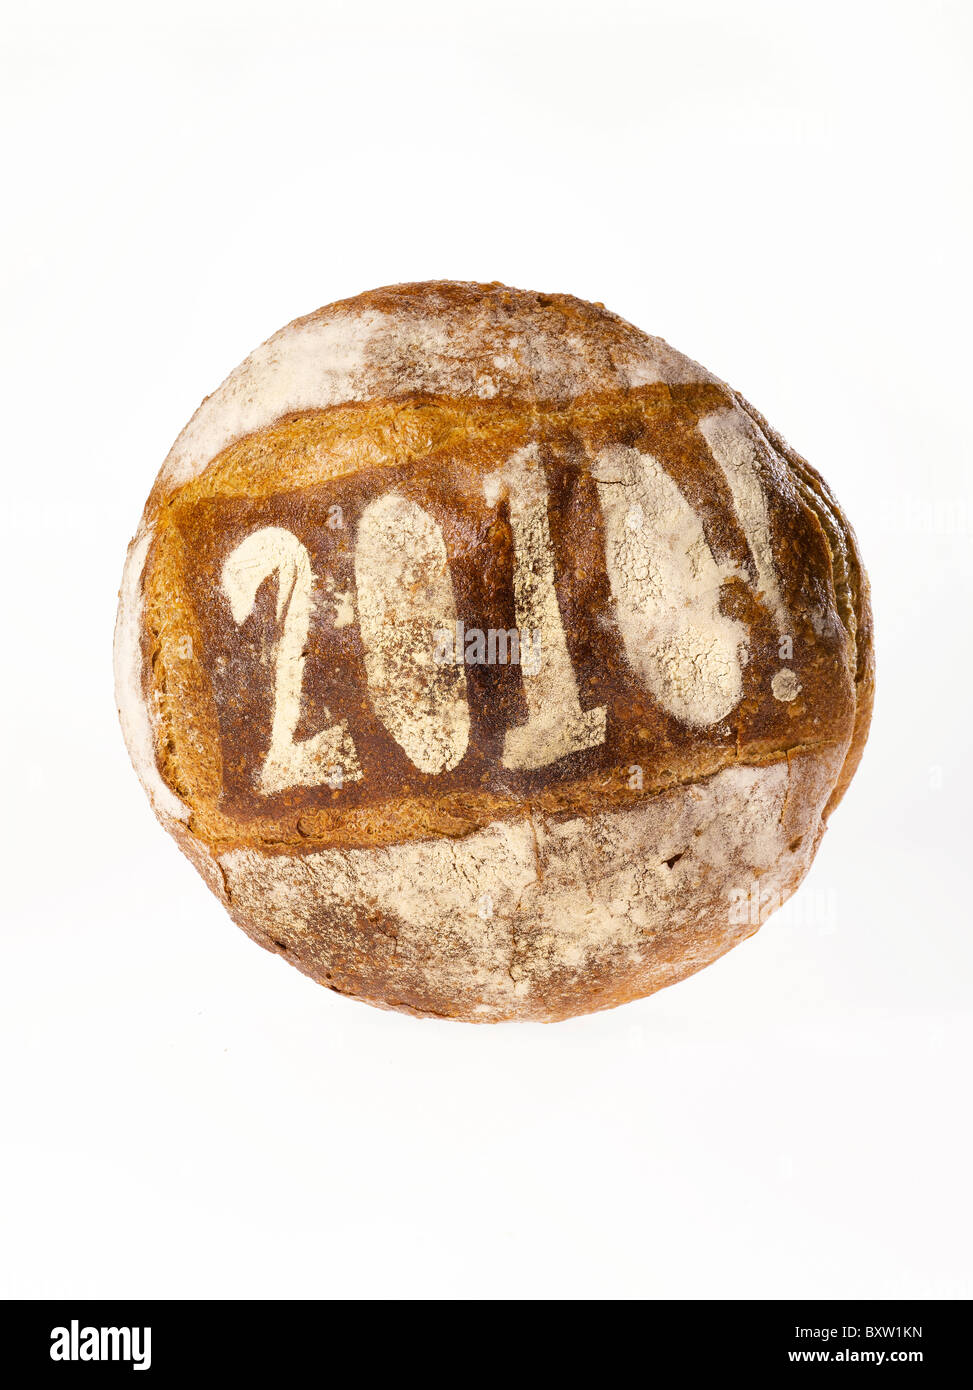 Pagnotta di pane stampata con l'anno 2010 Foto Stock